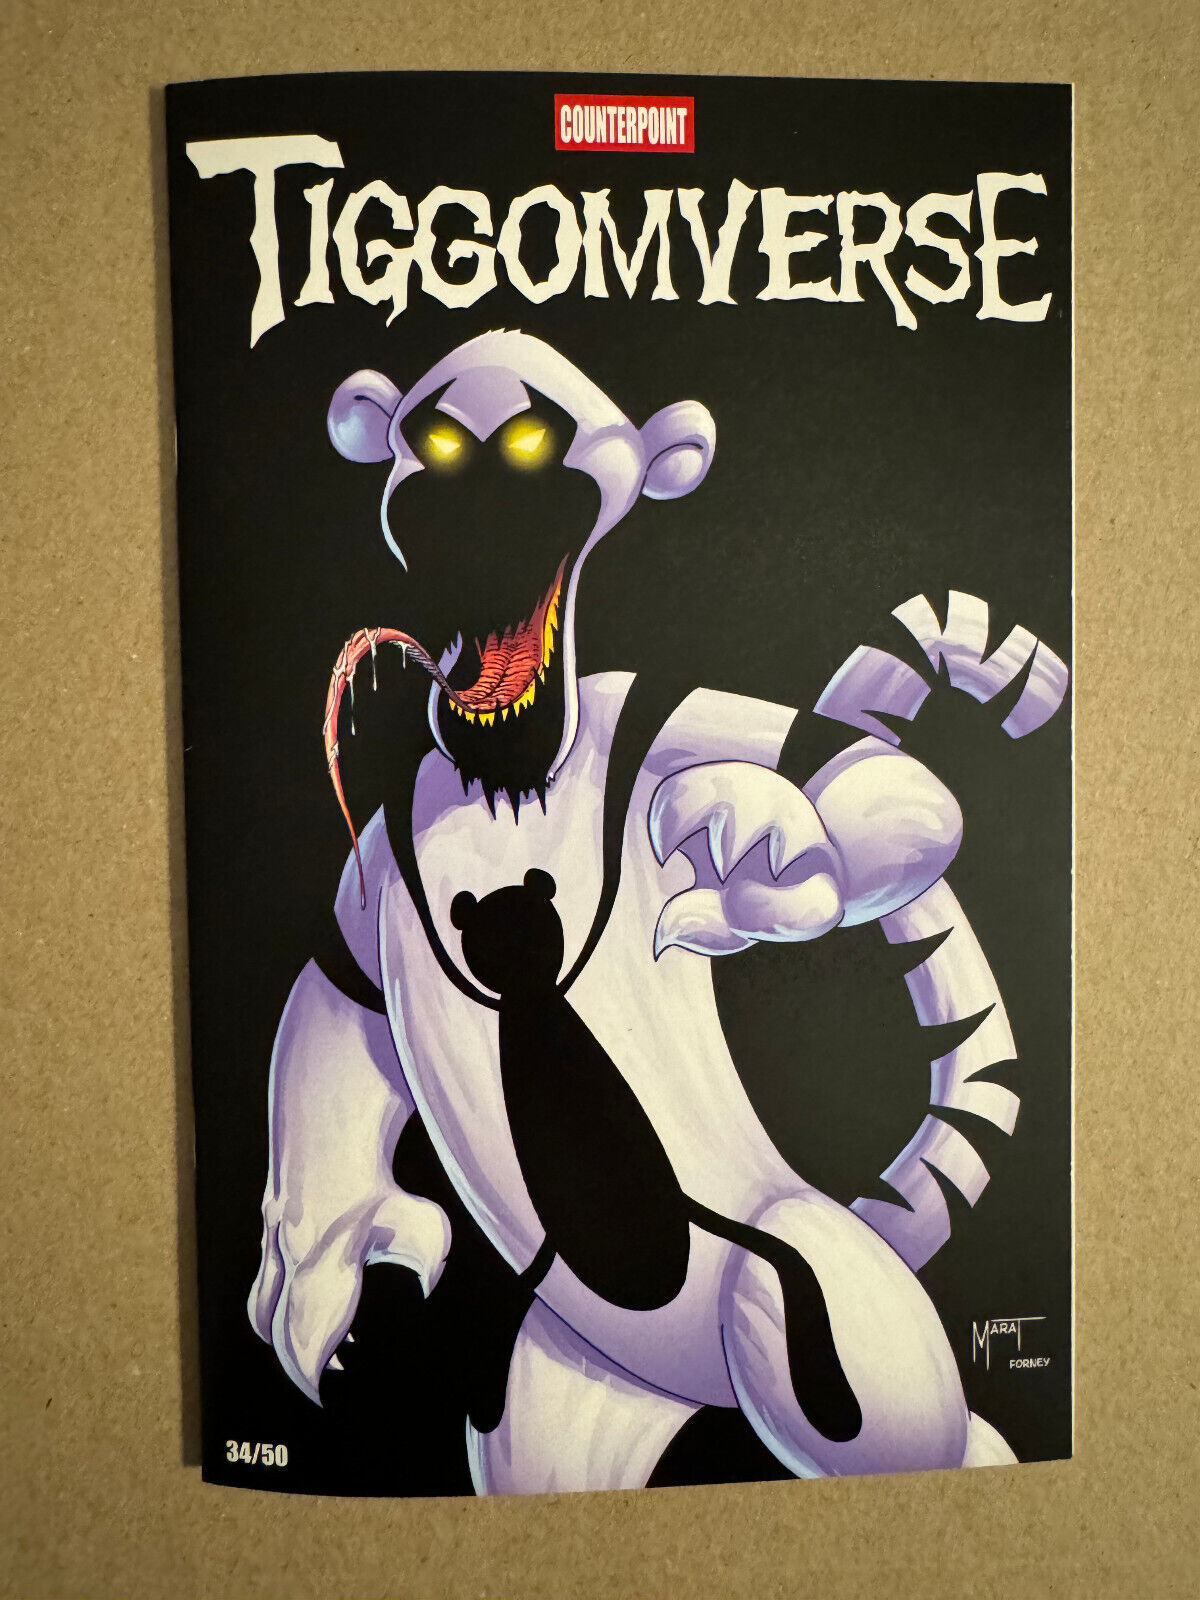 Tiggomverse #1 The Vault Exclusive Trade - 34/50